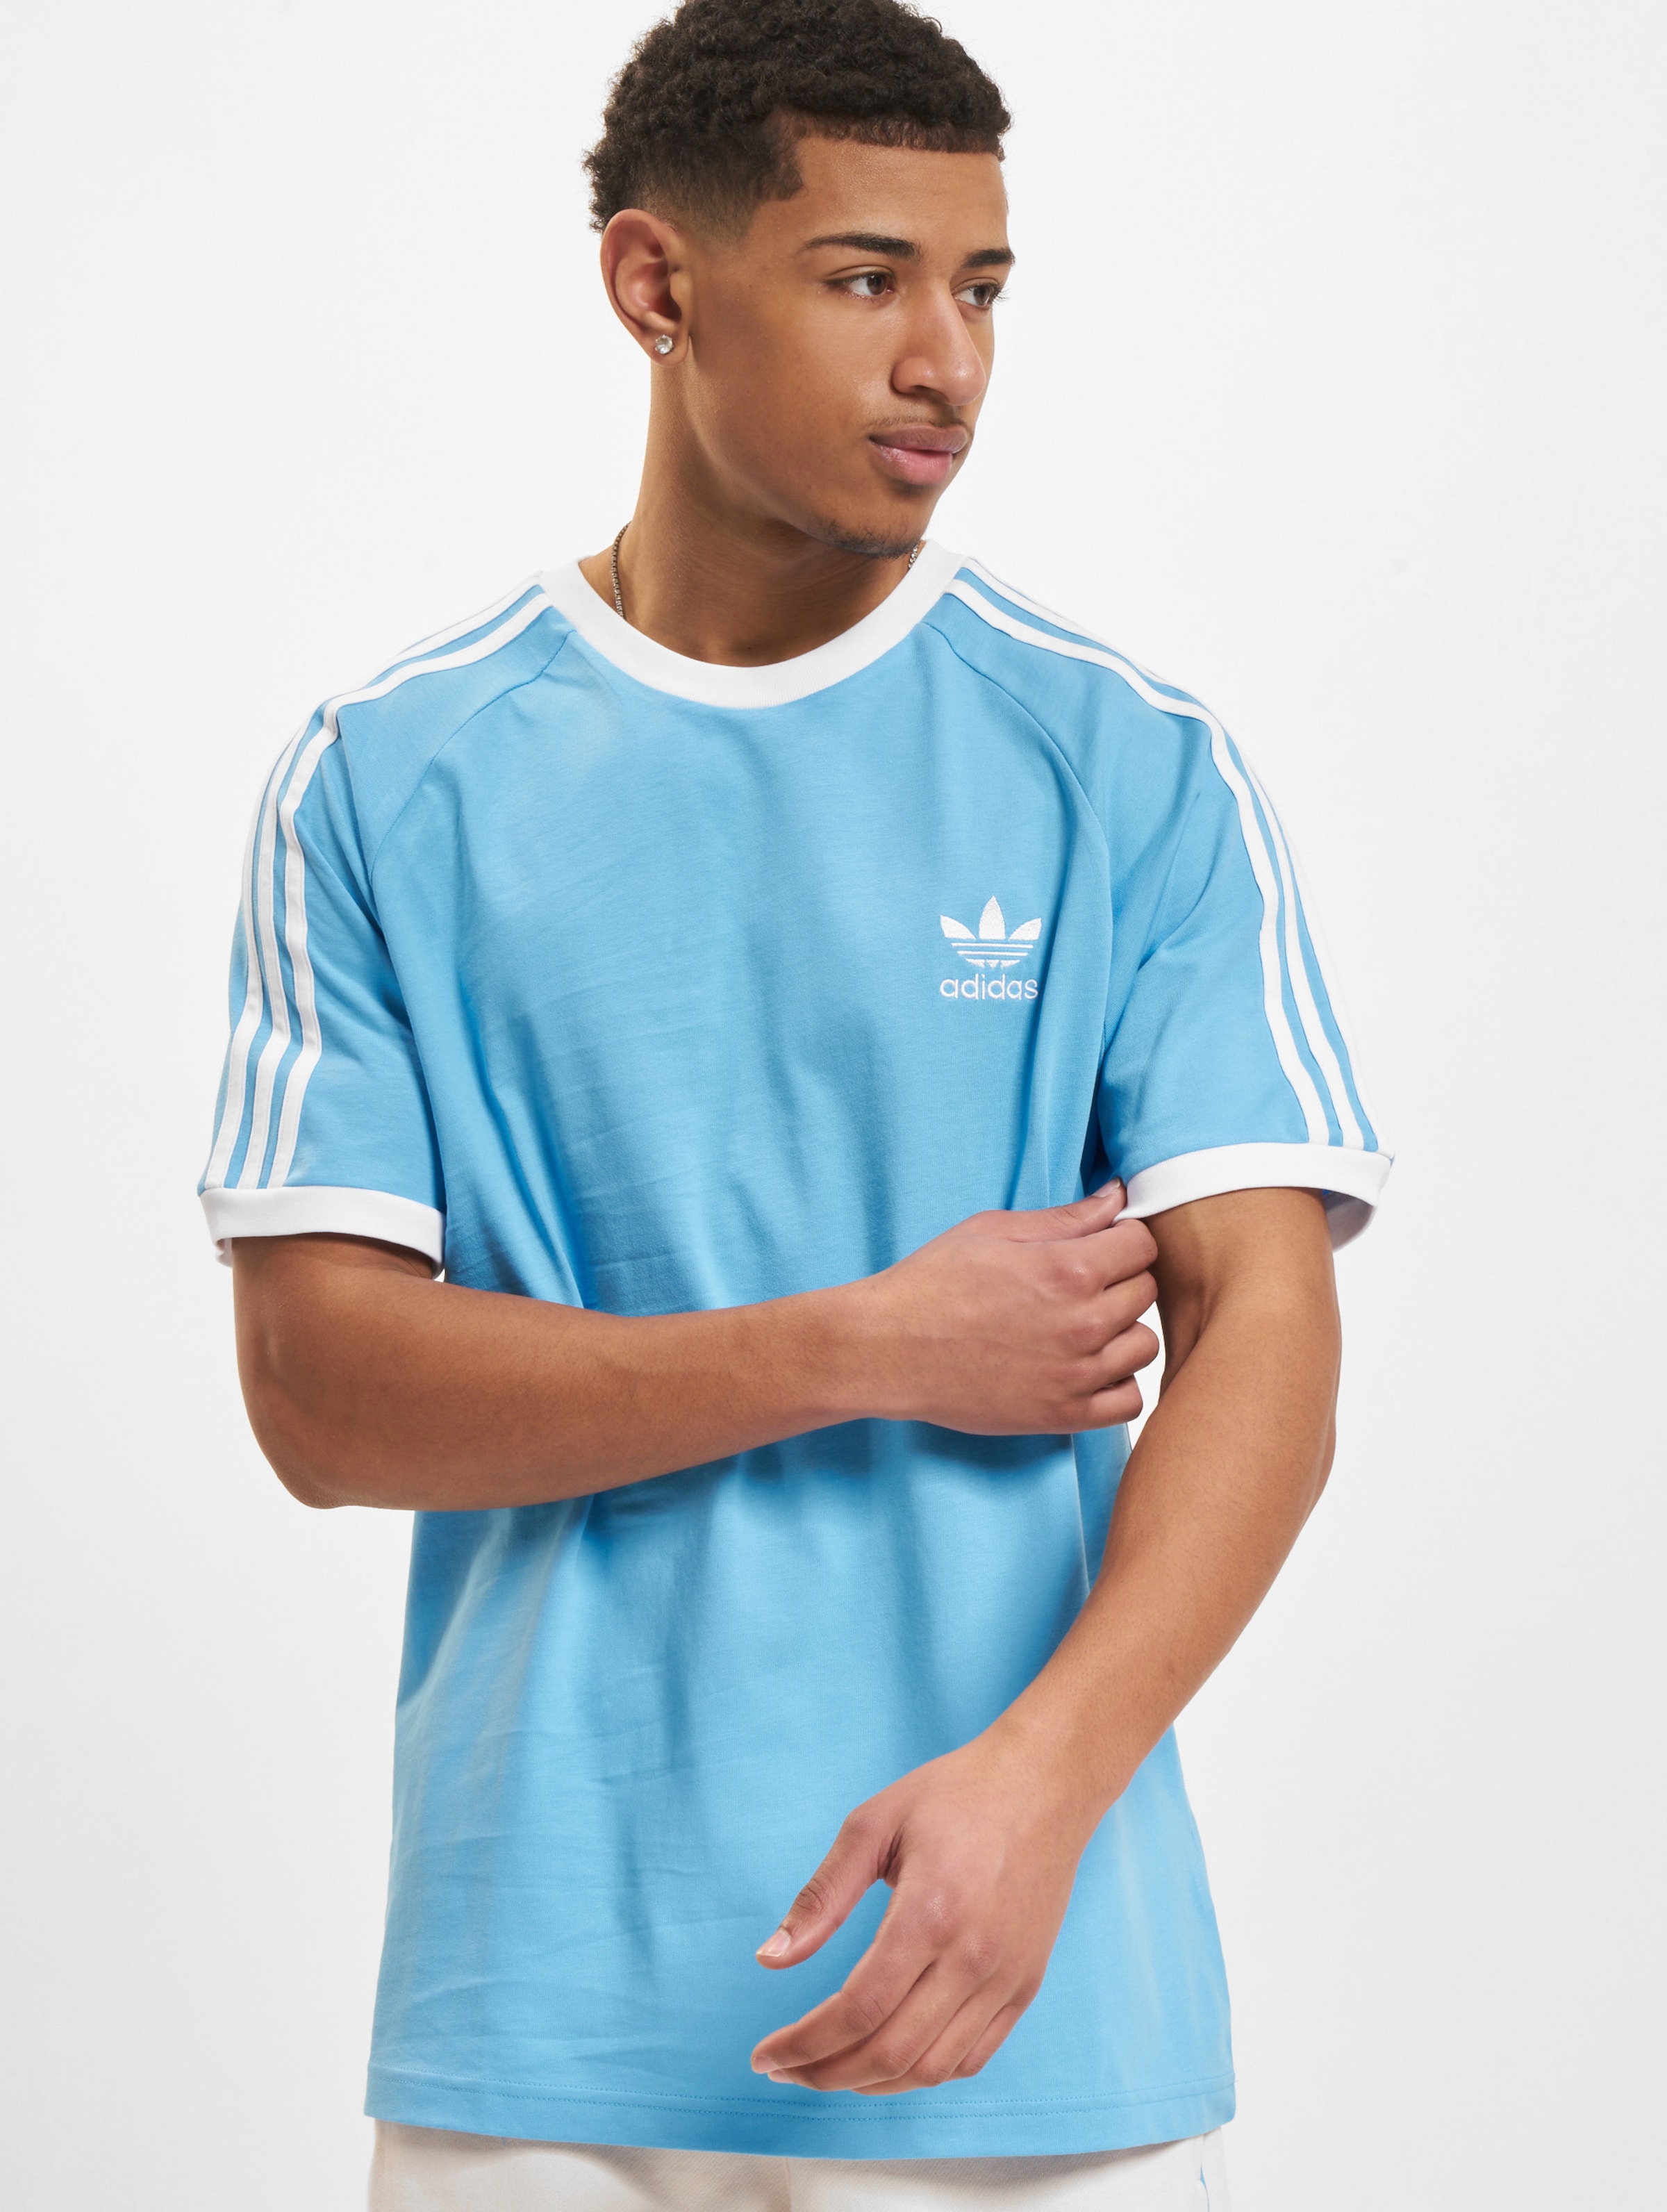 adidas Originals 3 Stripes T-Shirt Mannen,Unisex op kleur blauw, Maat 2XL